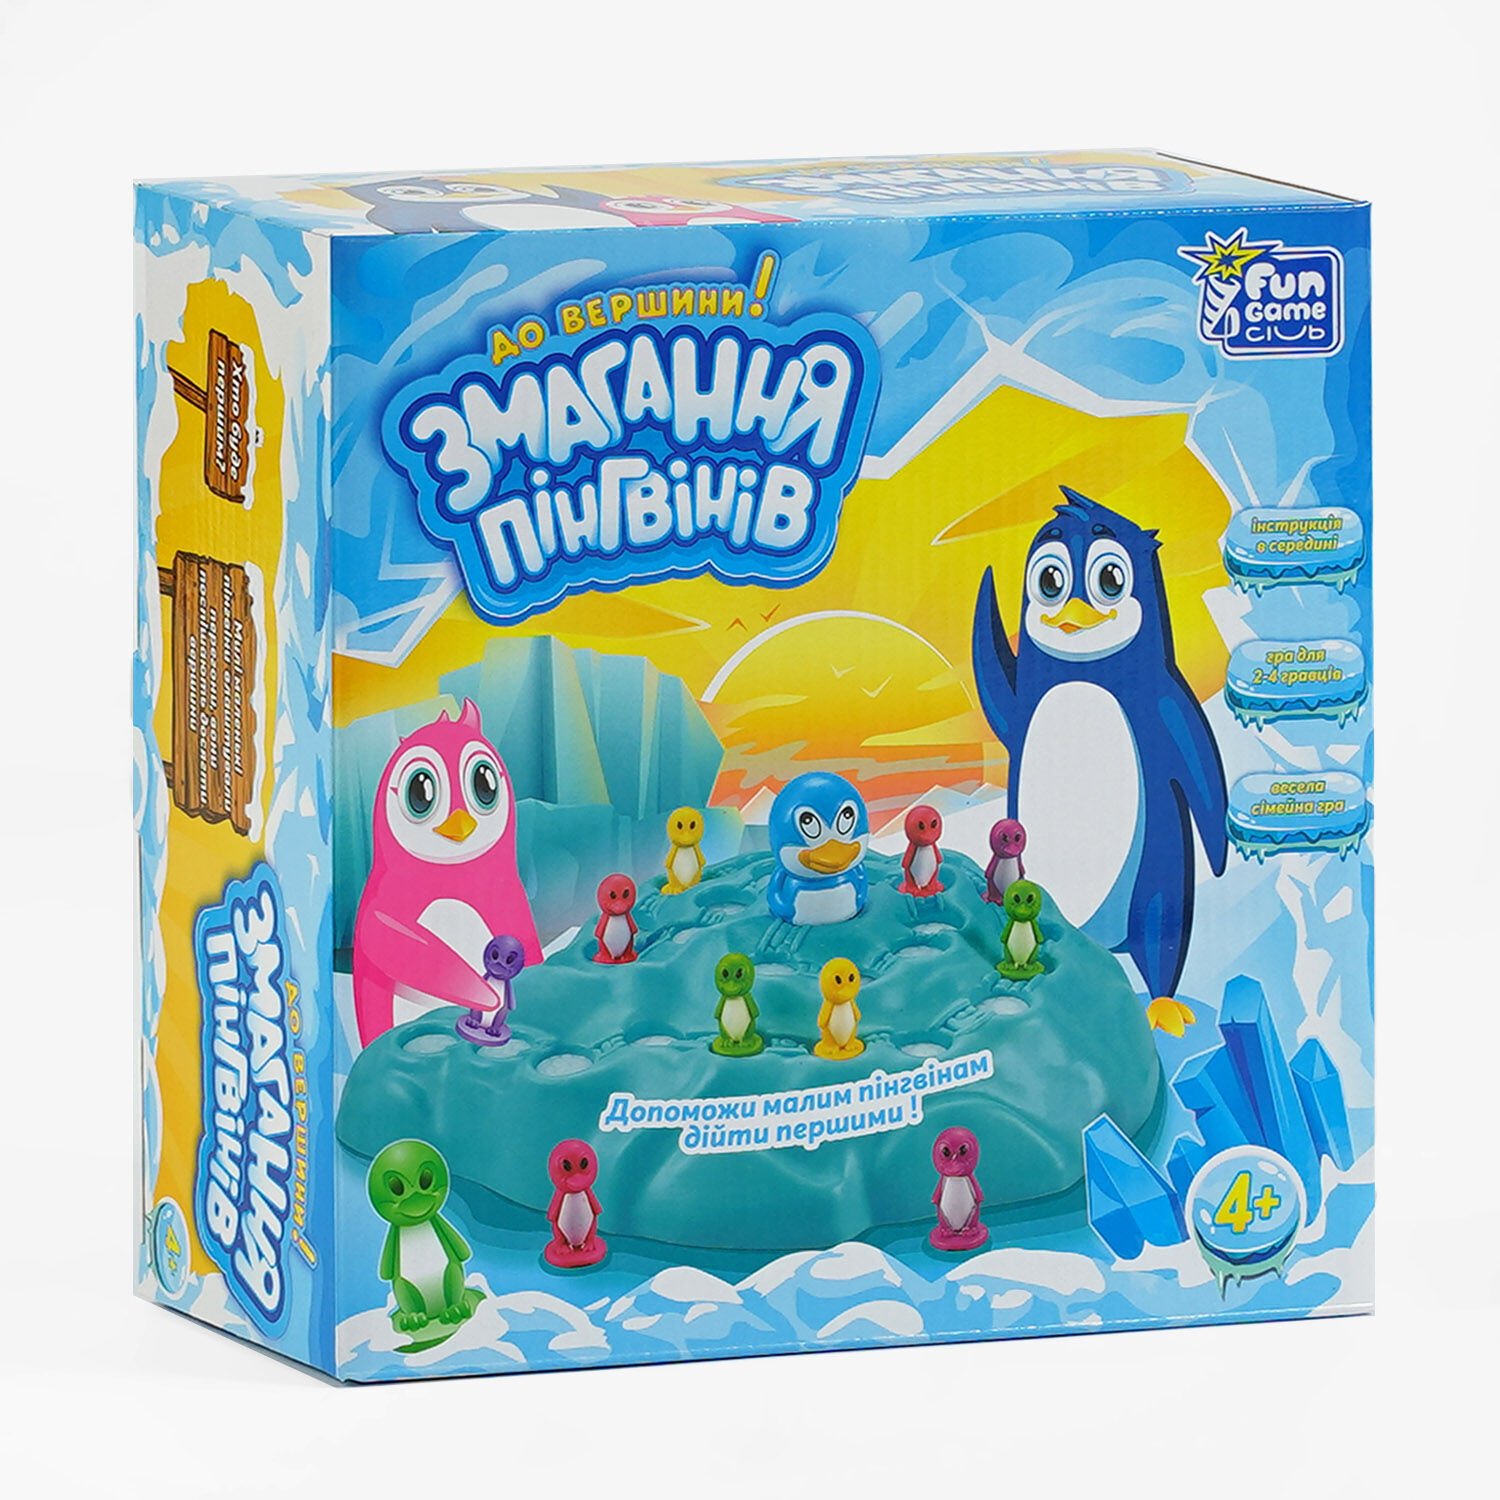 Настільна гра Змагання пінгвінів, бренду Fun Game, для 2-4 гравців - KUBIX